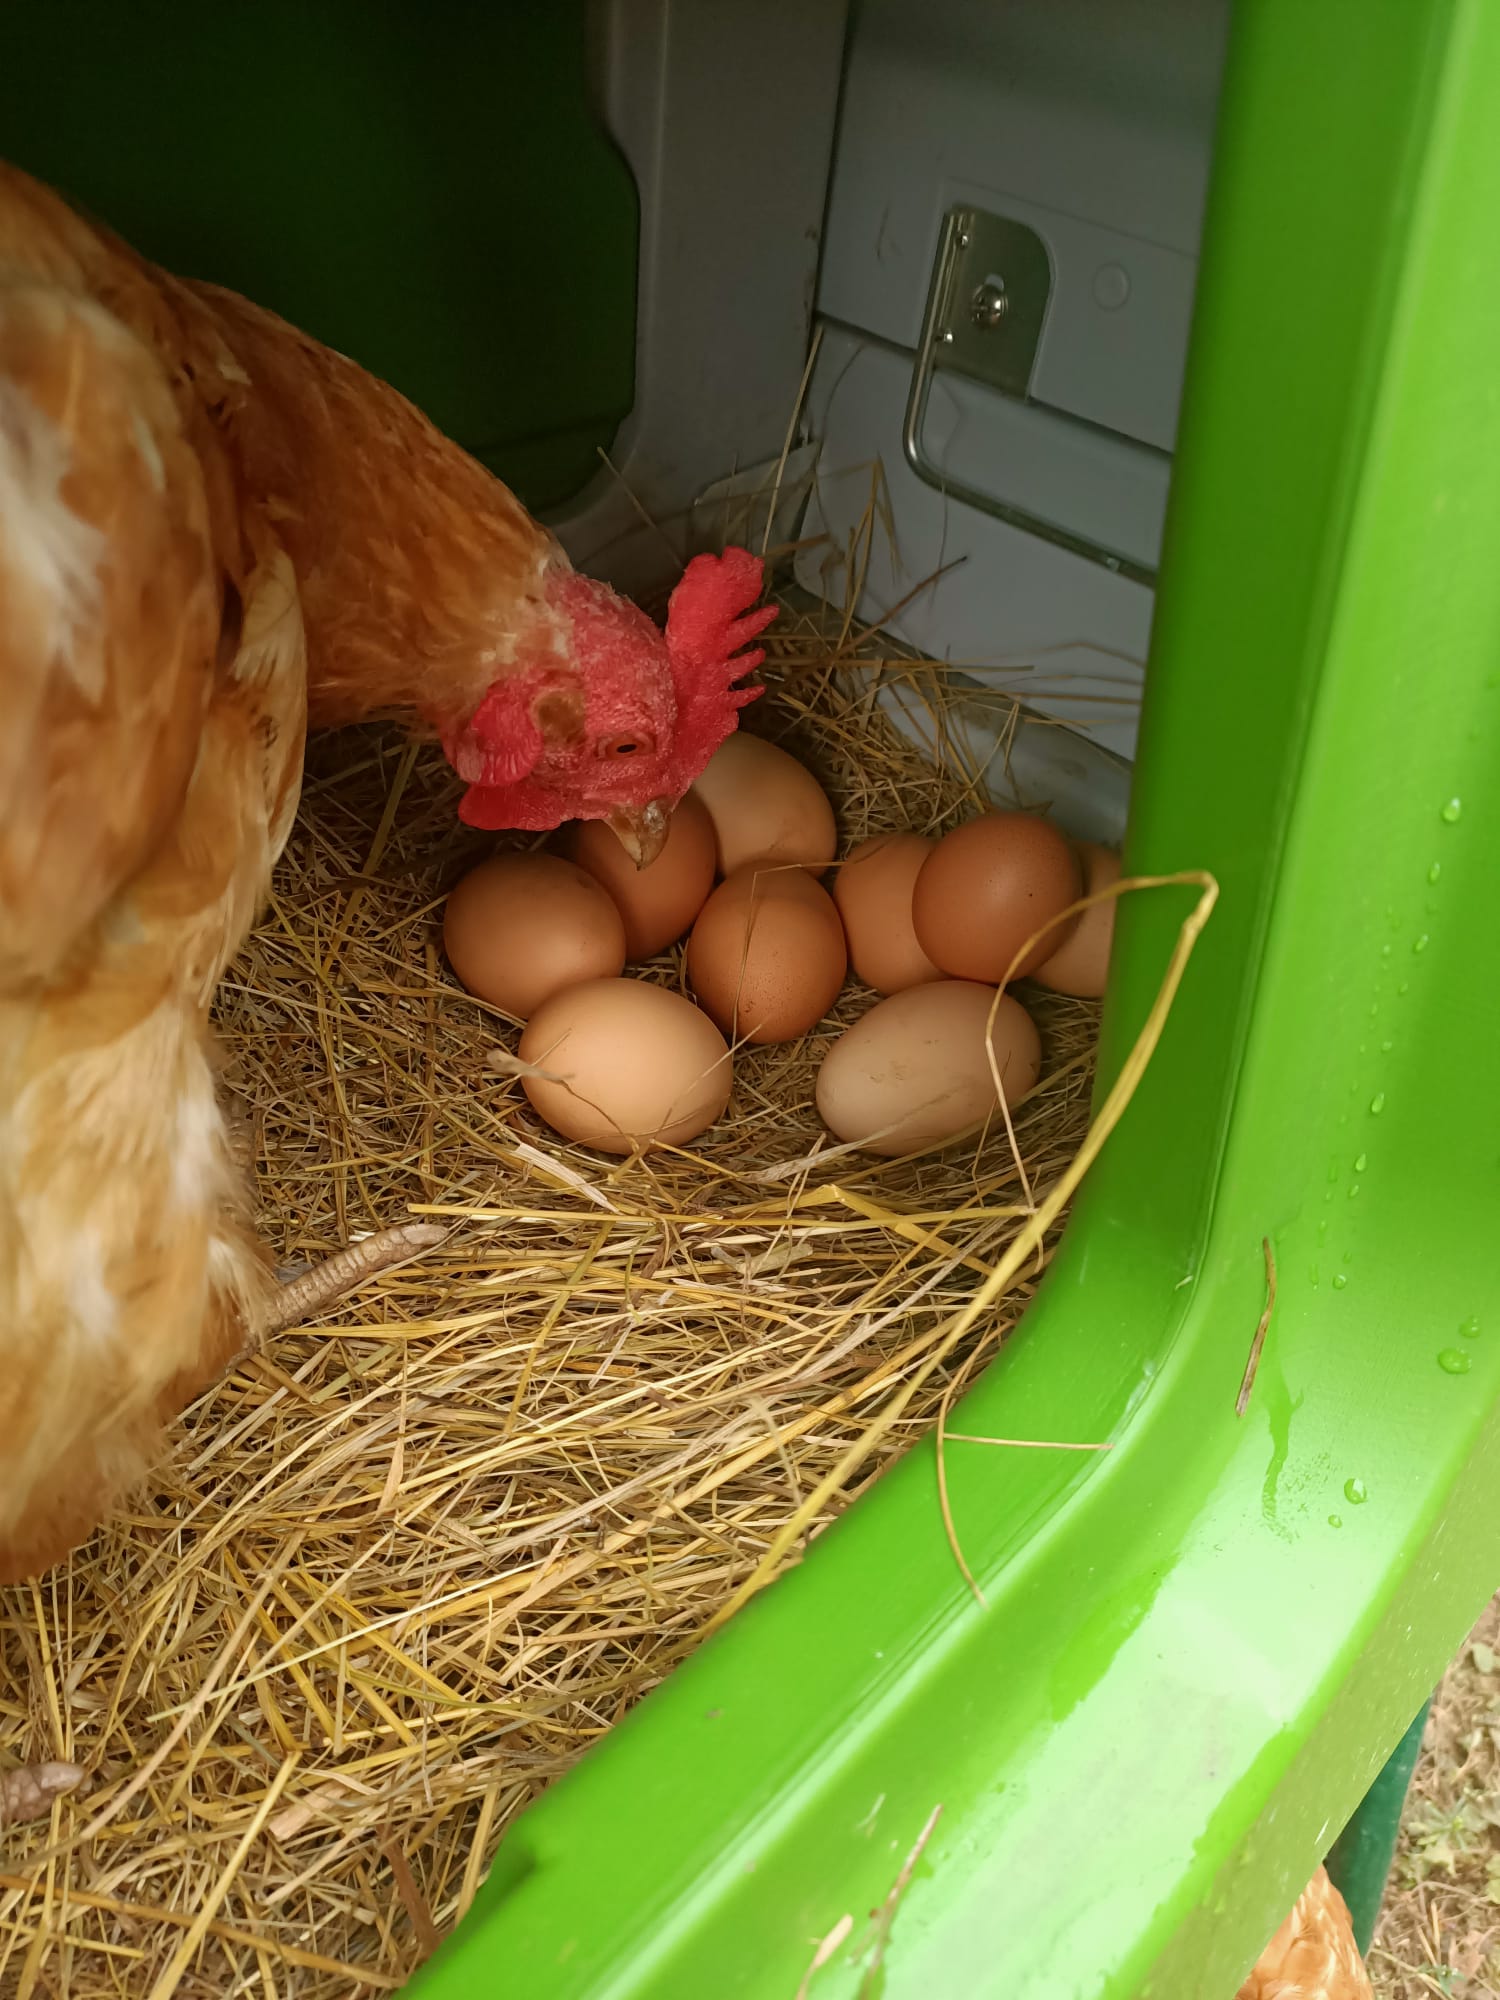 Una gallina haciendo un control de calidad de sus huevos en su caja nido